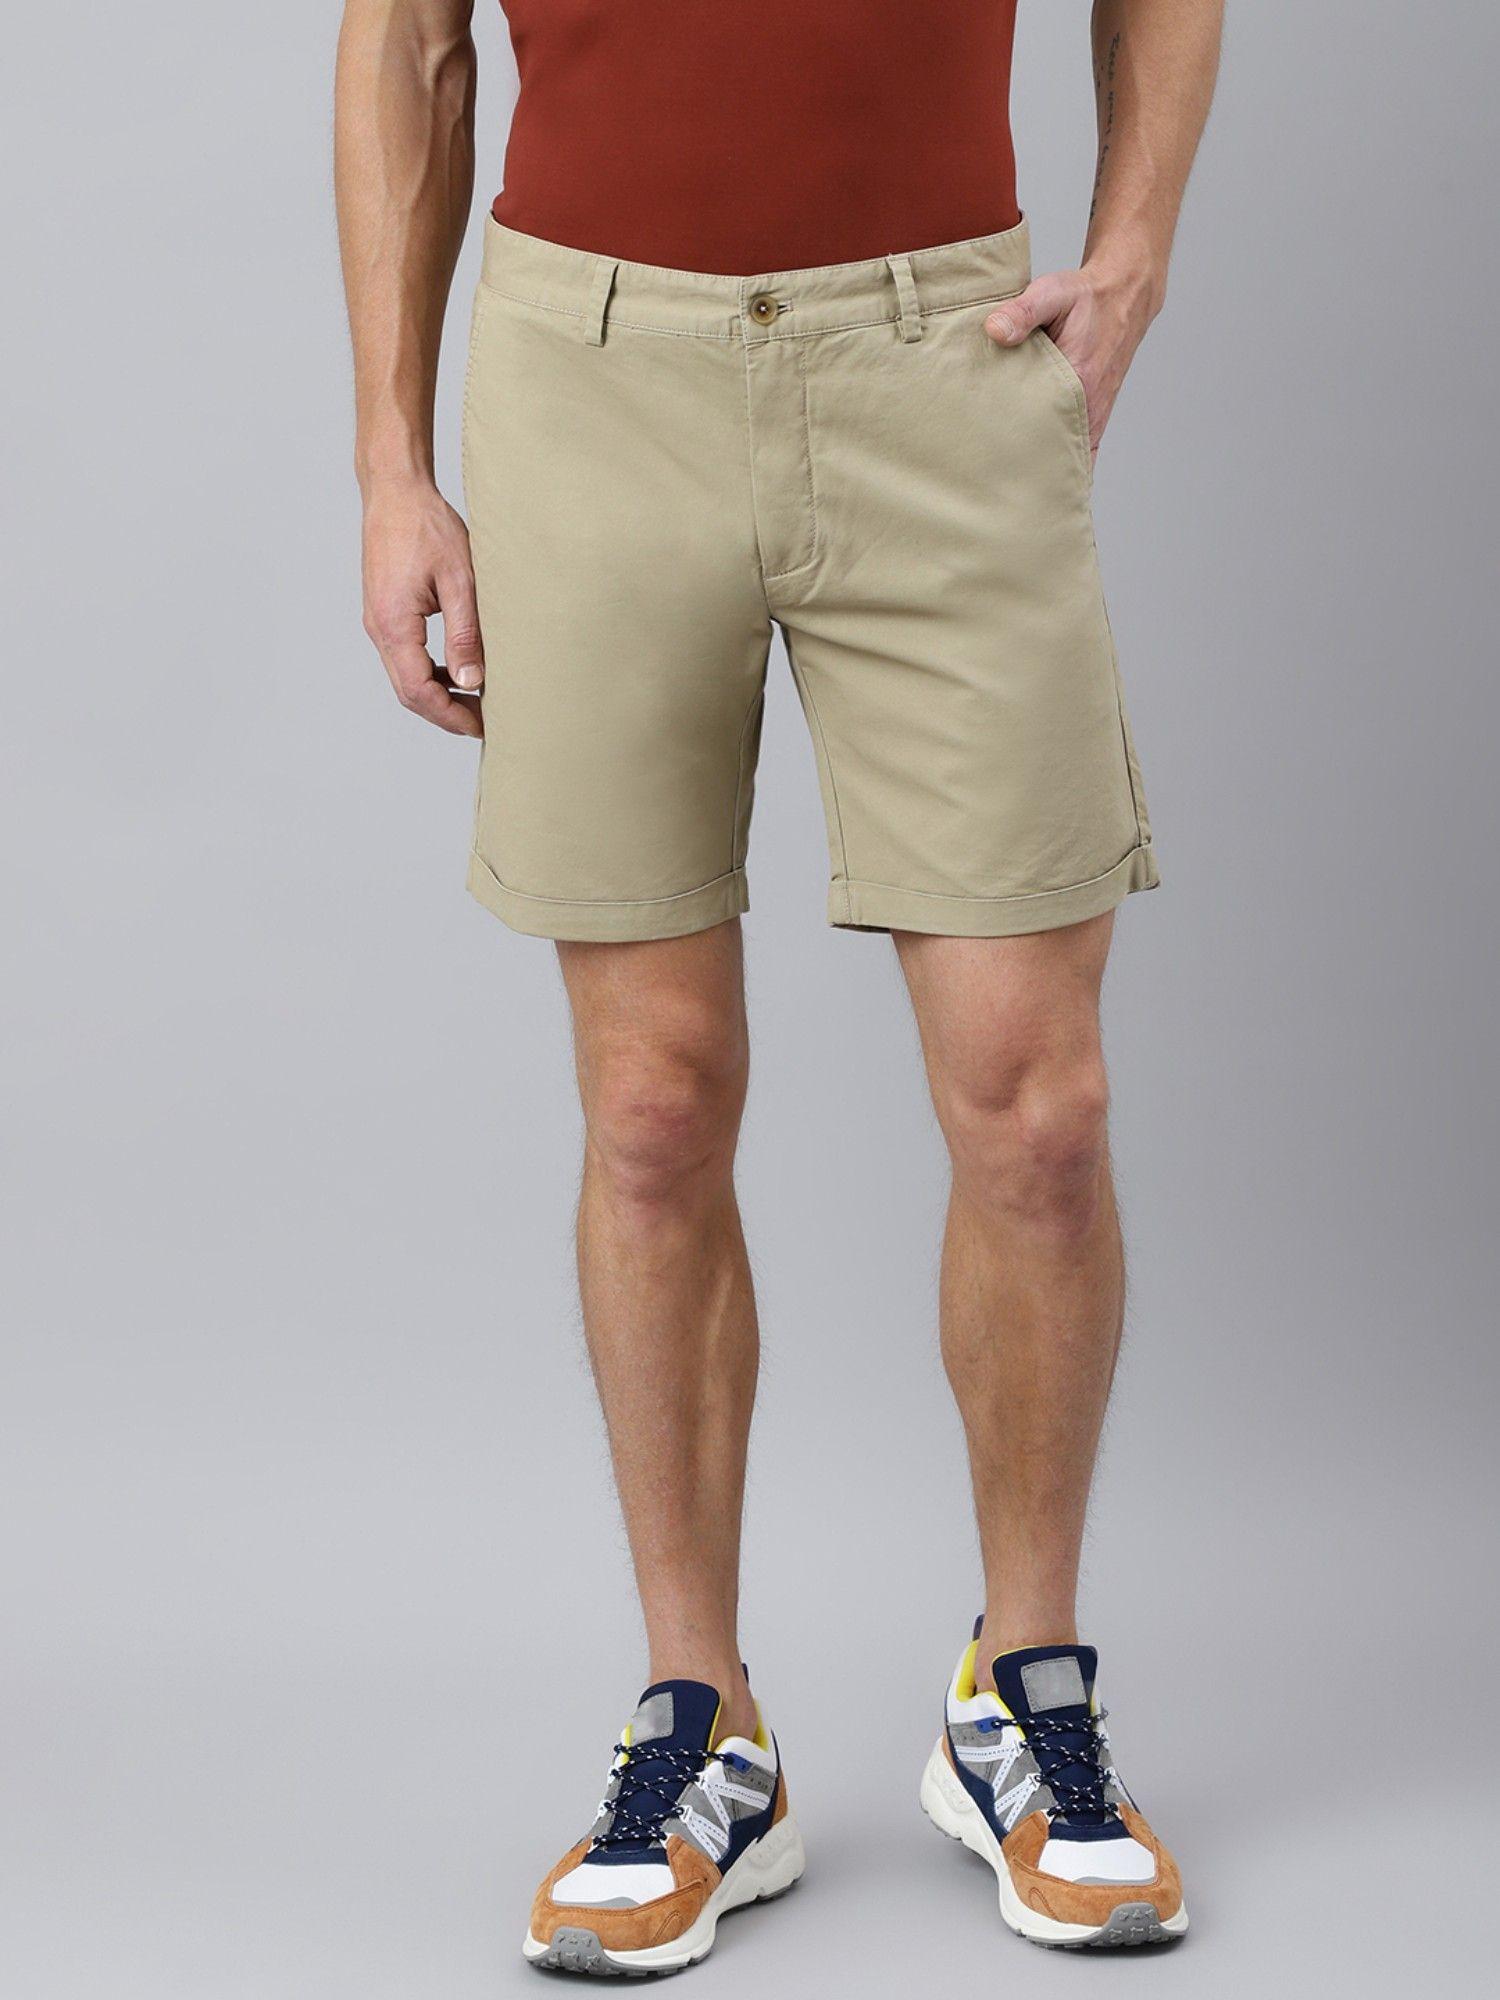 plain beige shorts